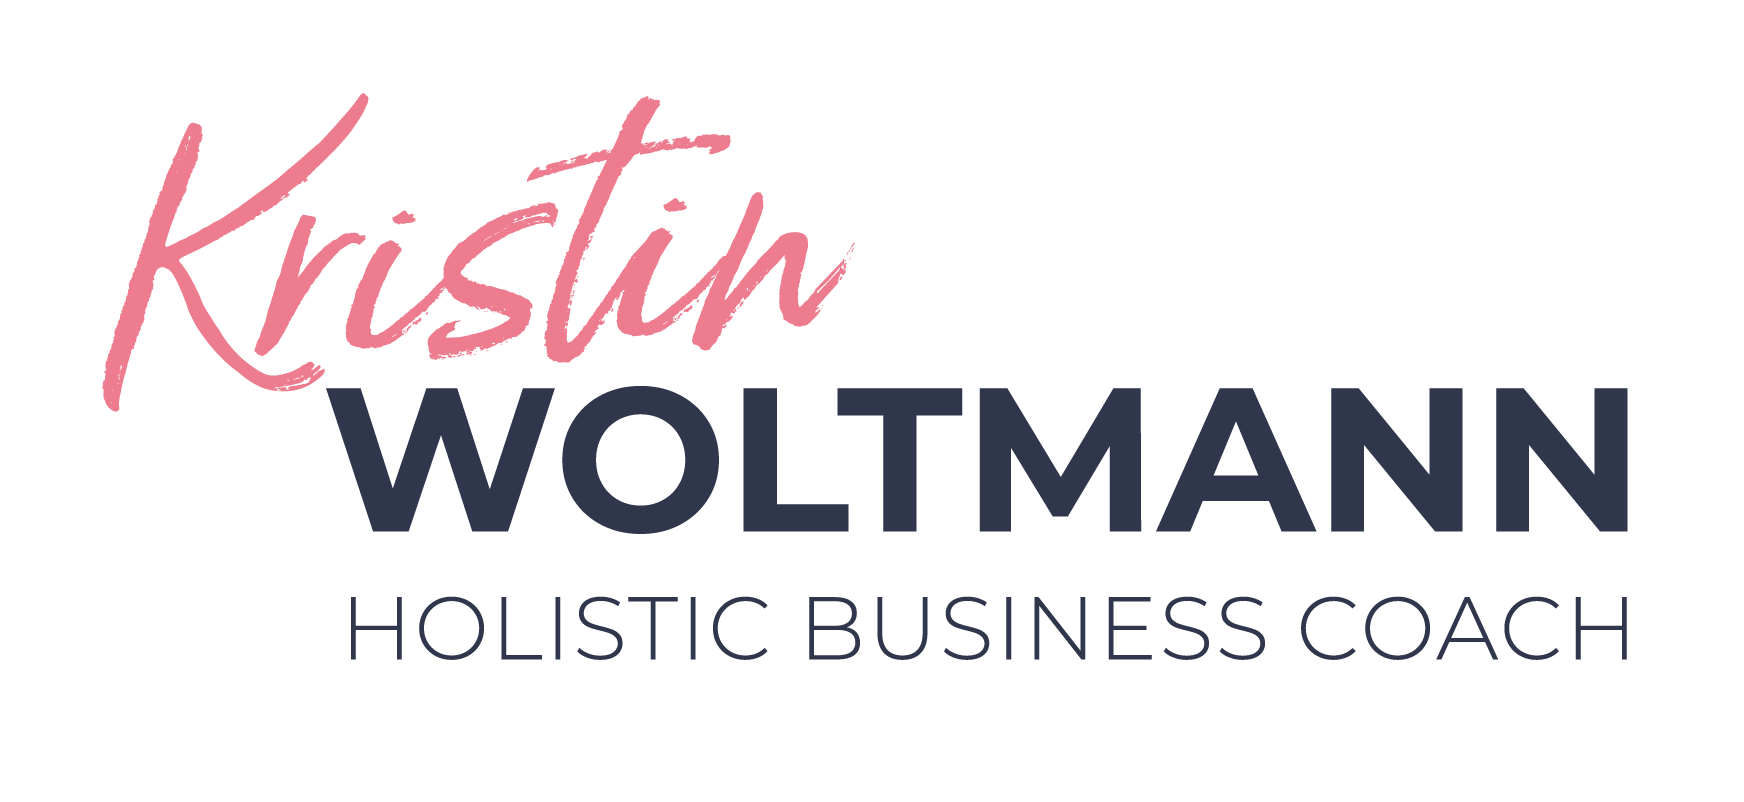 logo_holistic_kristin_woltmann_rgb_300dpi